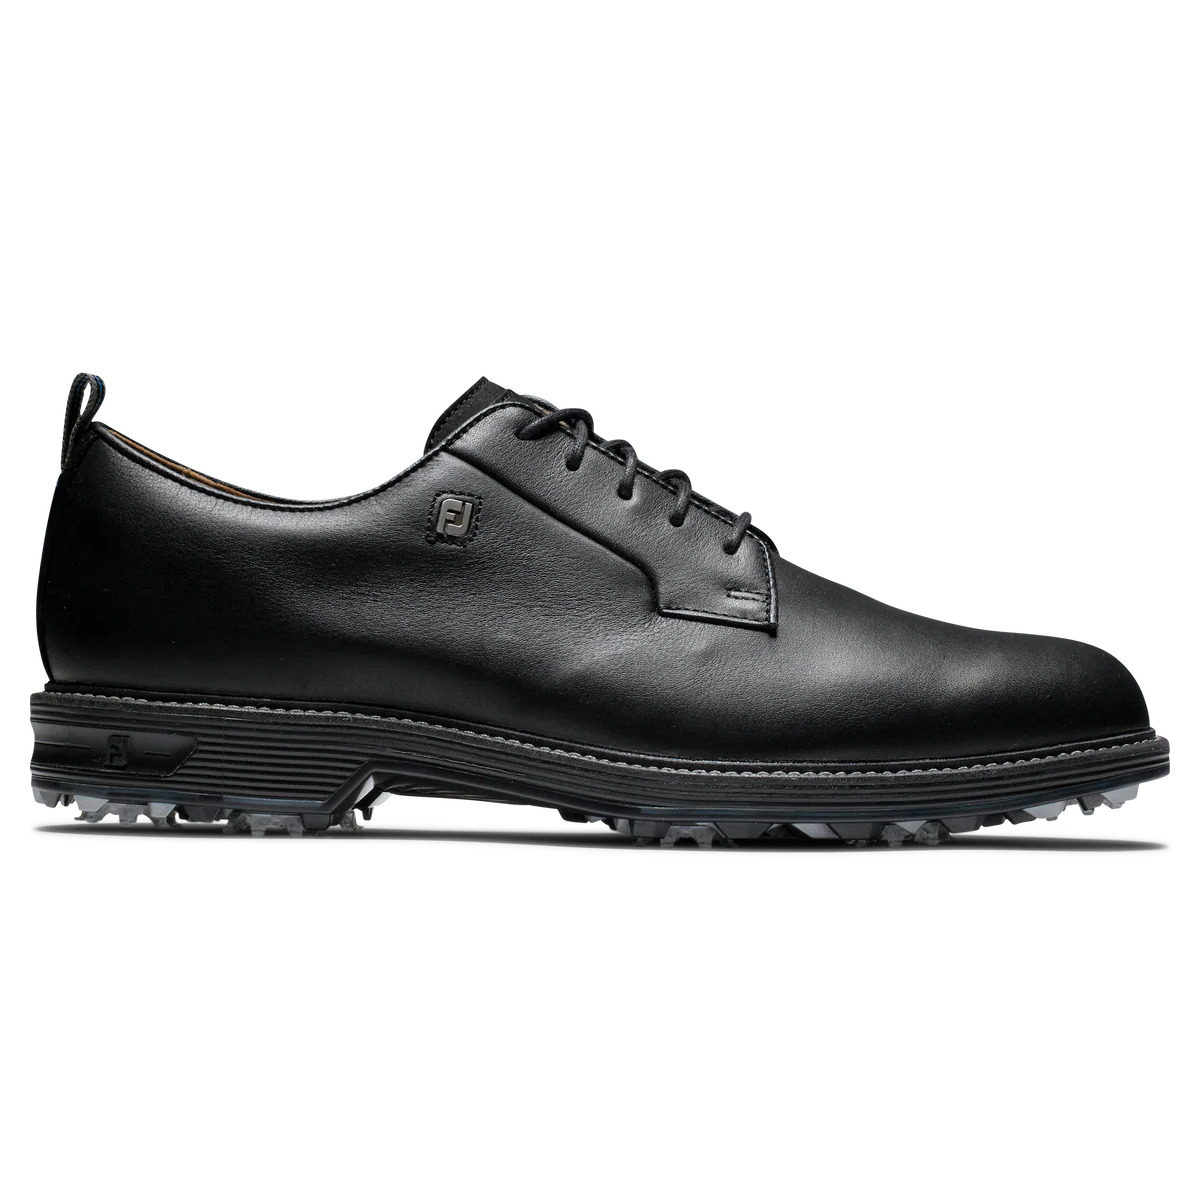 footjoy premier series golf shoes size 10